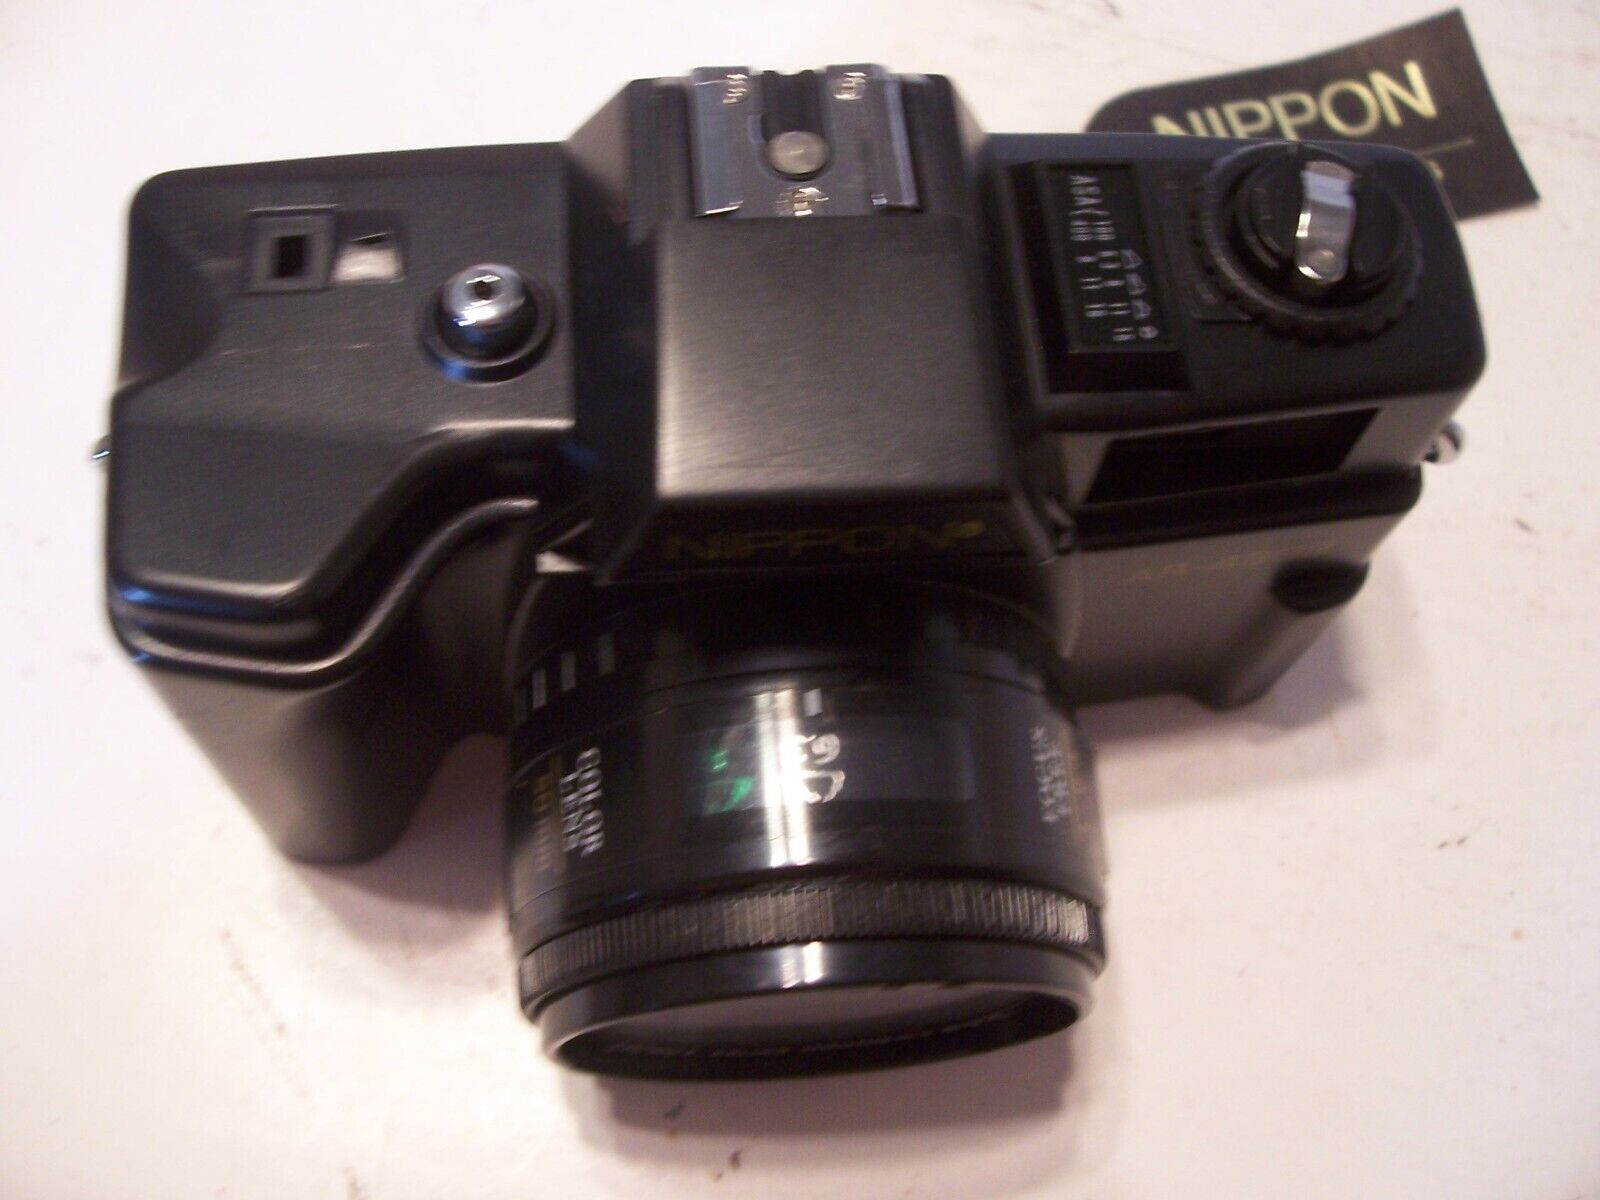 NEW Vintage Film 35mm Camera Nippon AR-4392F w/ Case, Strap, Sun Shade, Lens Cap Nippon ar 4392F - фотография #13